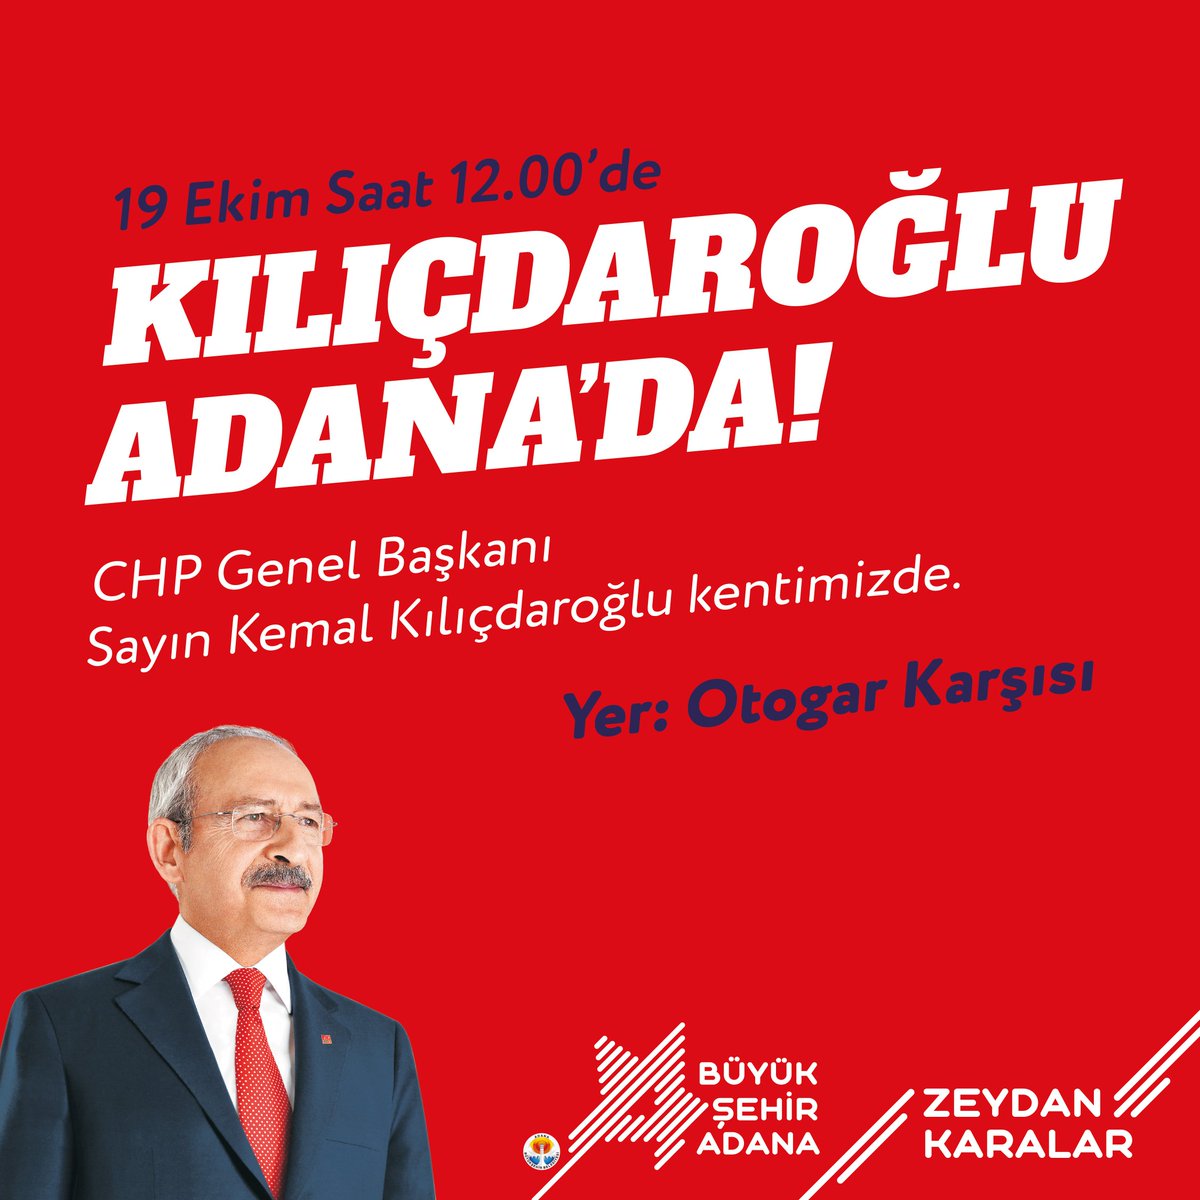 Kemal Kılıçdaroğlu Adana'da Genel Başkanımız Sayın @kilicdarogluk'nun katılımıyla gerçekleştireceğimiz toplu açılış, temel atma ve lansman törenimize tüm hemşehrilerimizi bekliyoruz. 🗓️ 19 Ekim 2022 Çarşamba 🕛 12.00 📍 Merkez Otogar Karşısı